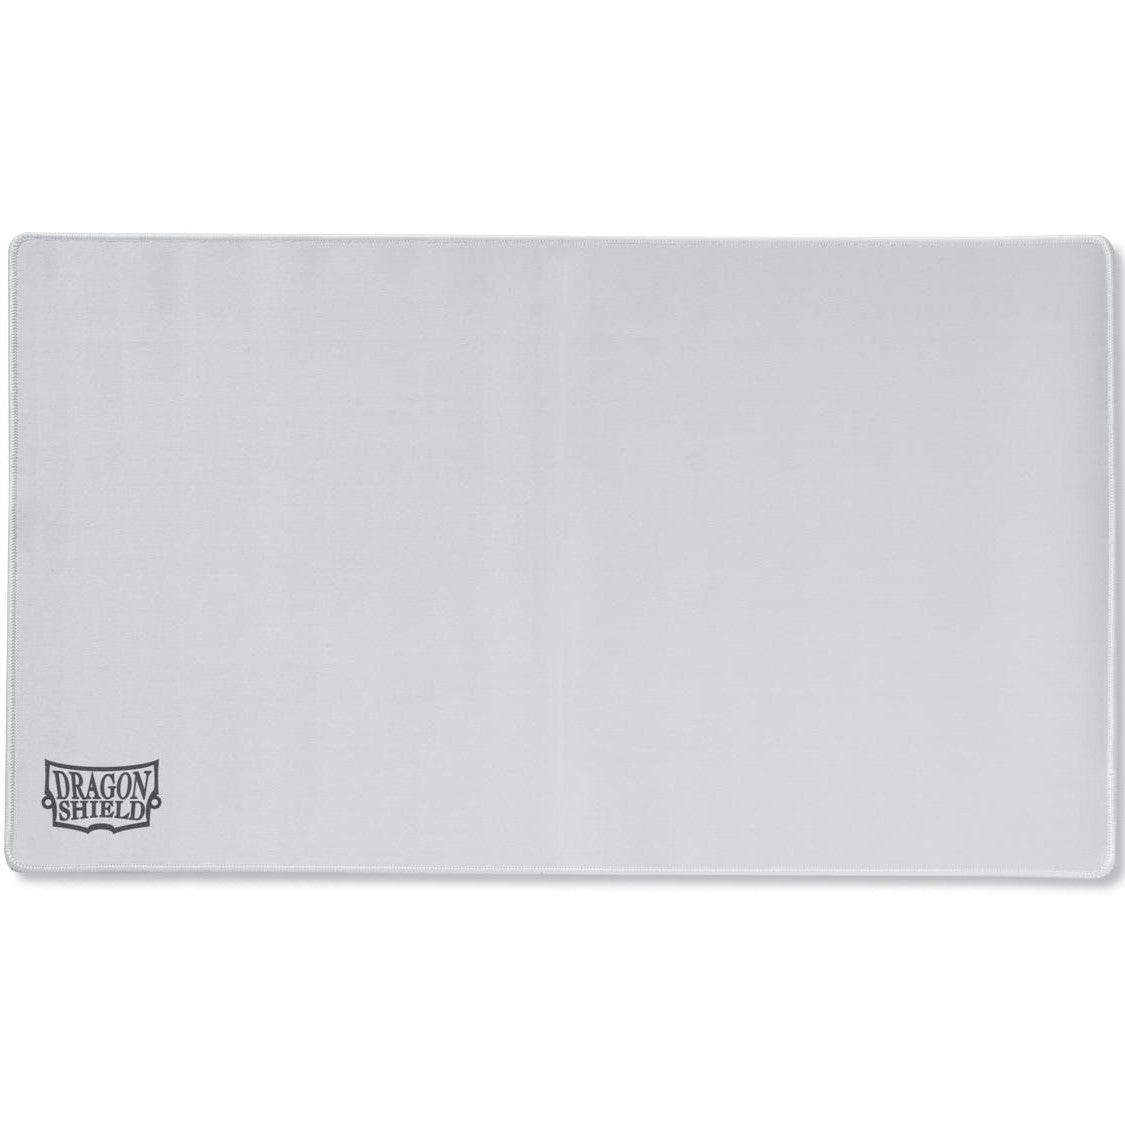 Dragon Shield Playmat: Plain White